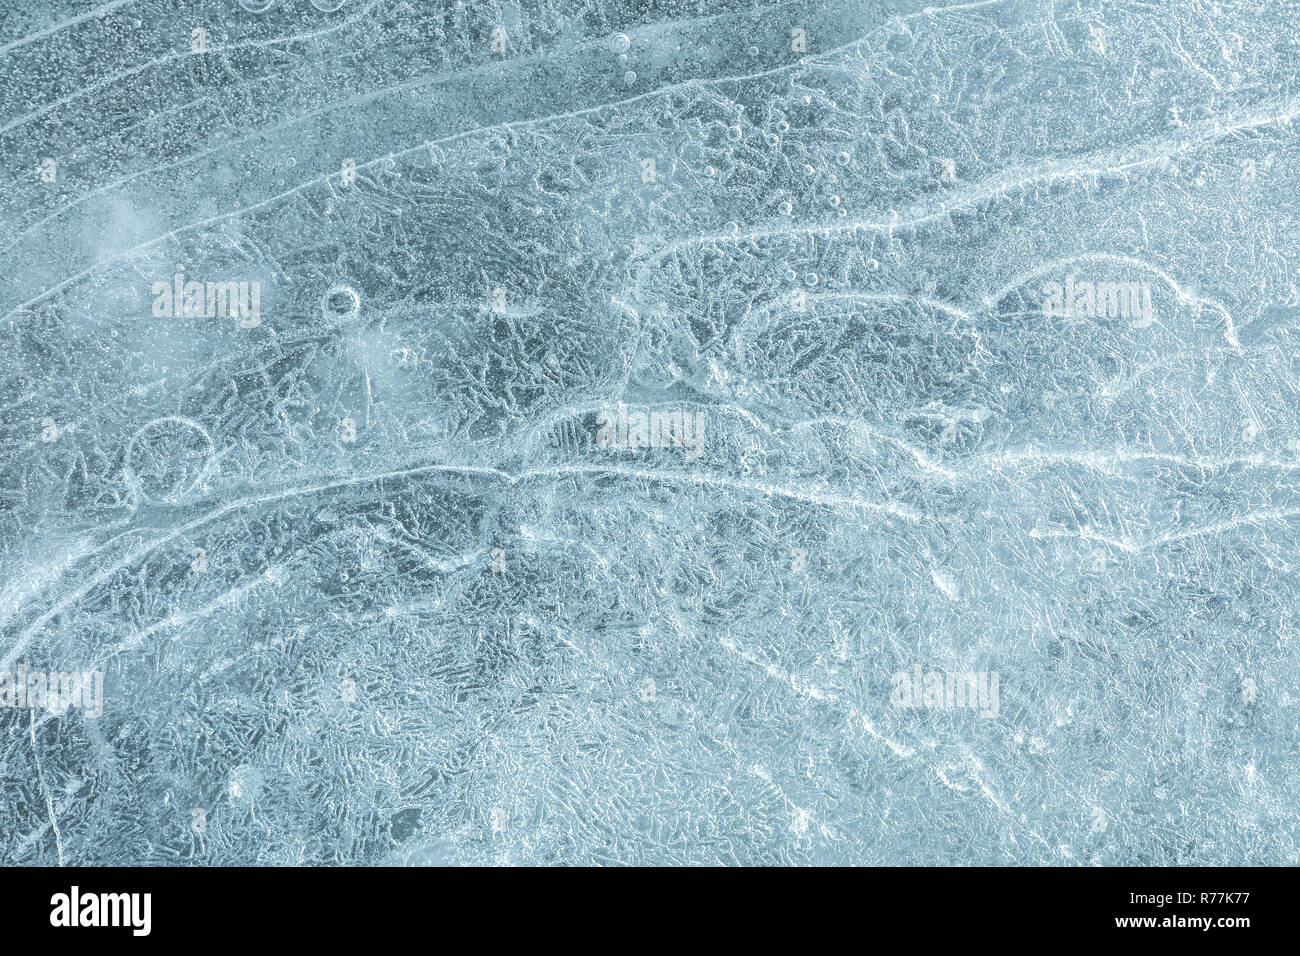 Schöne kurvige Muster und Risse auf dem Eisblock Oberfläche. Kalte eisige Winter Textur Stockfoto